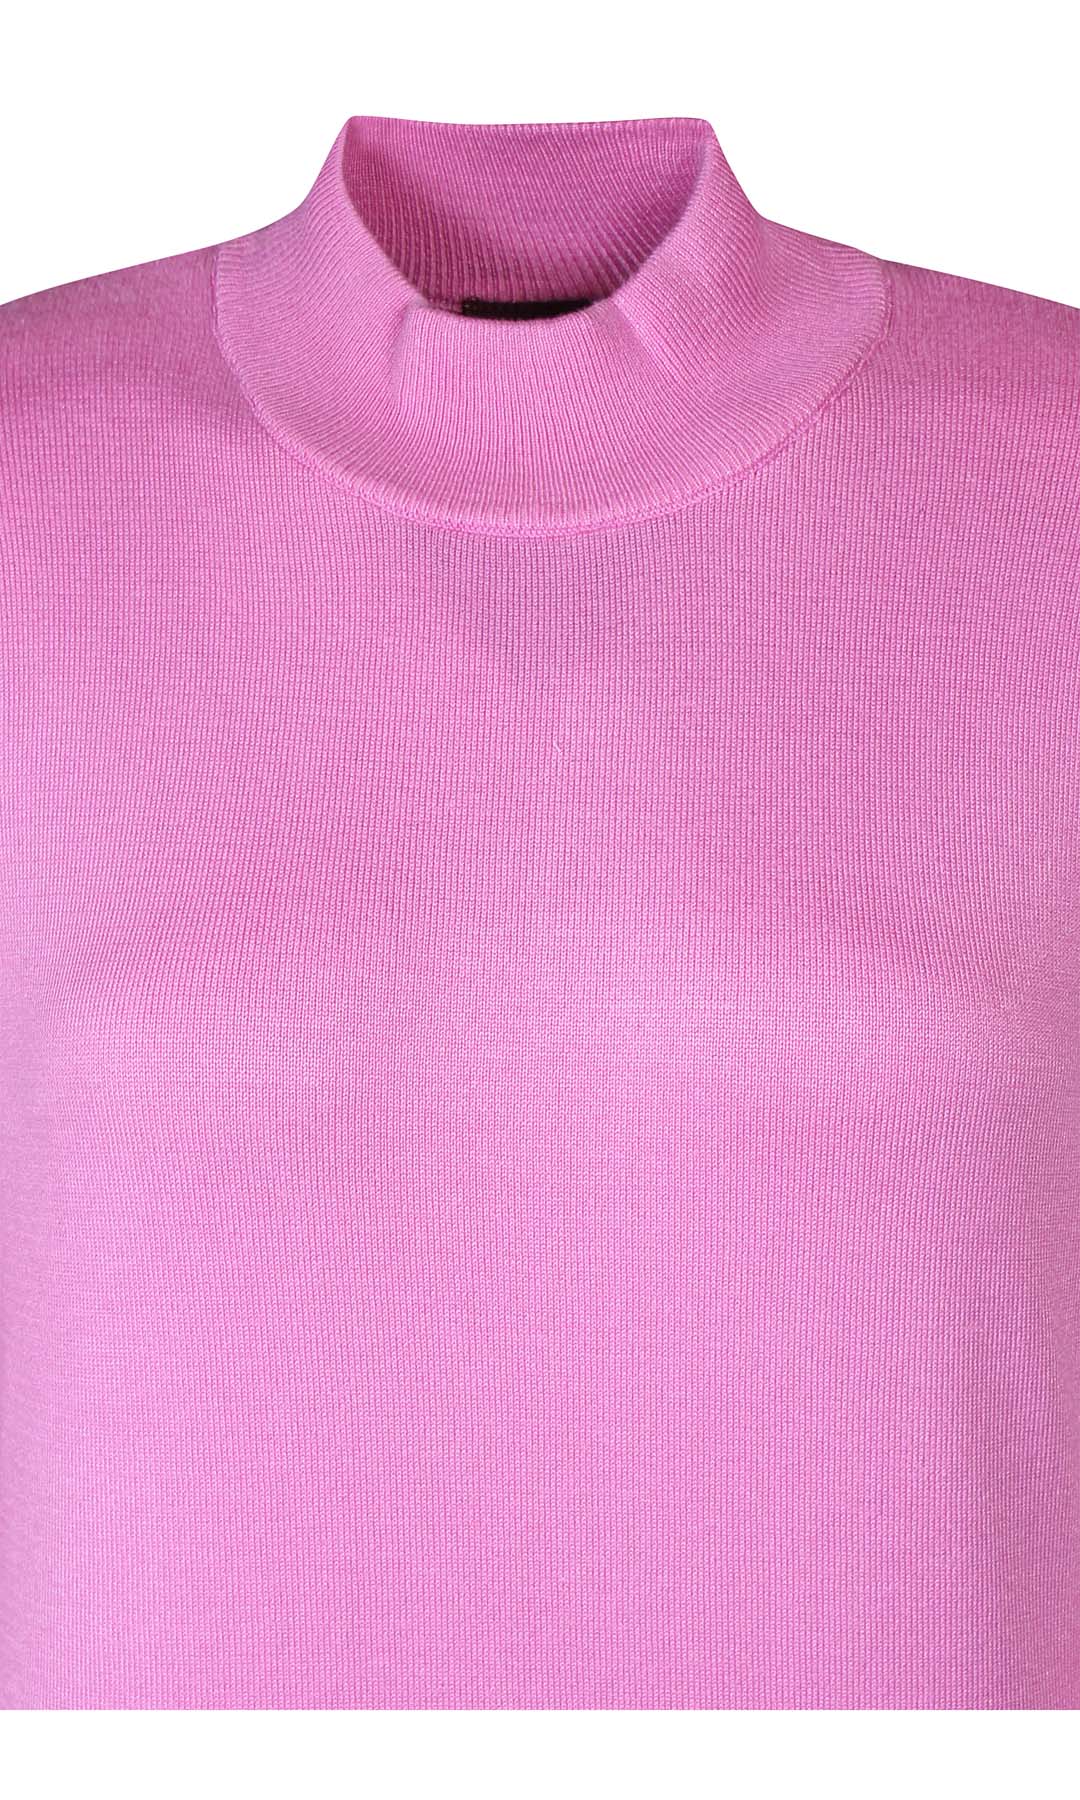 Norma 341 - Trøje - Pink